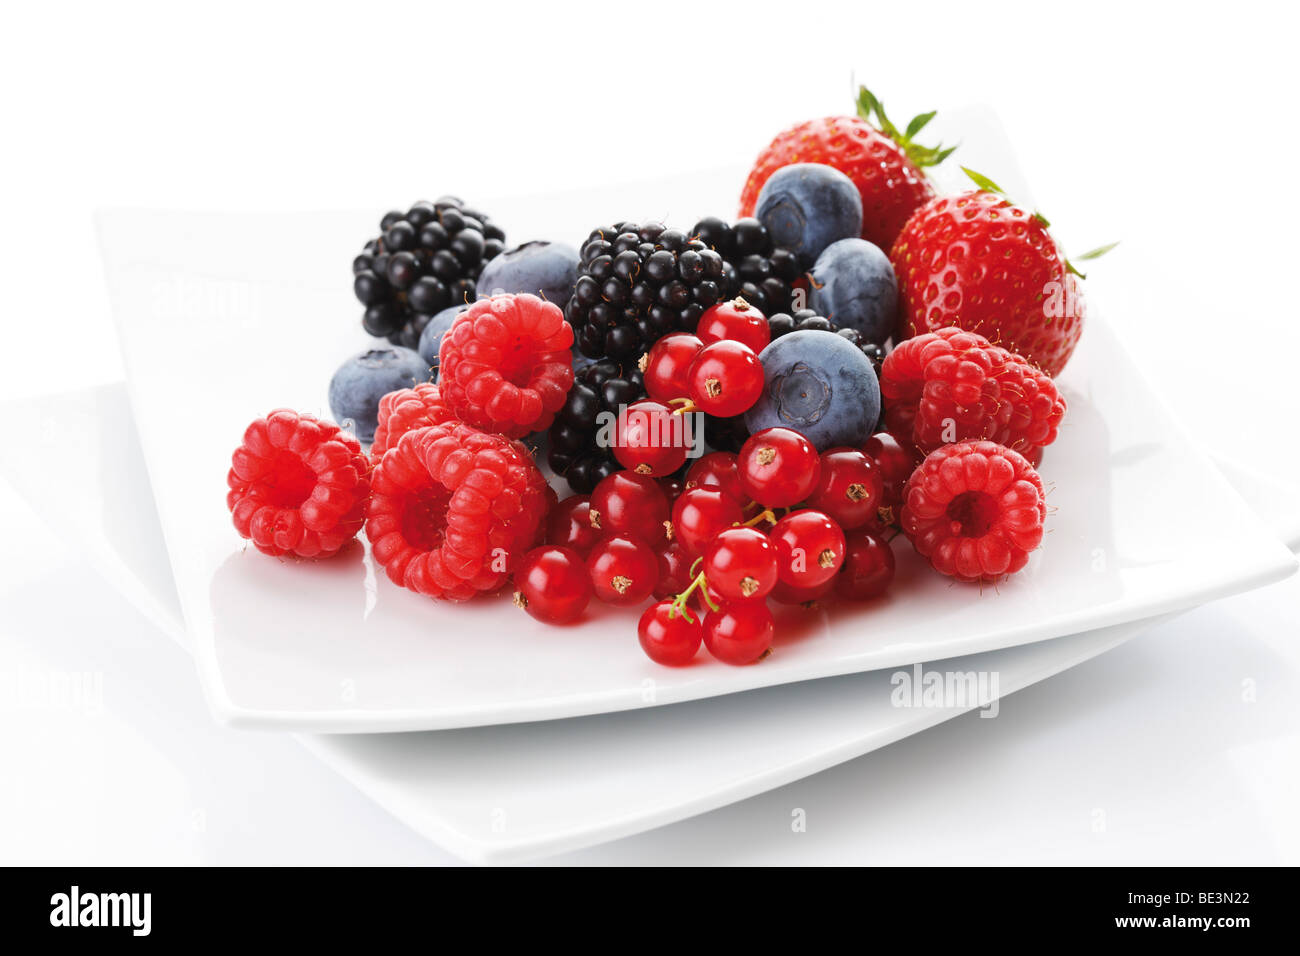 Wild berries on a plate, raspberries, blackberries, blueberries, strawberries Stock Photo